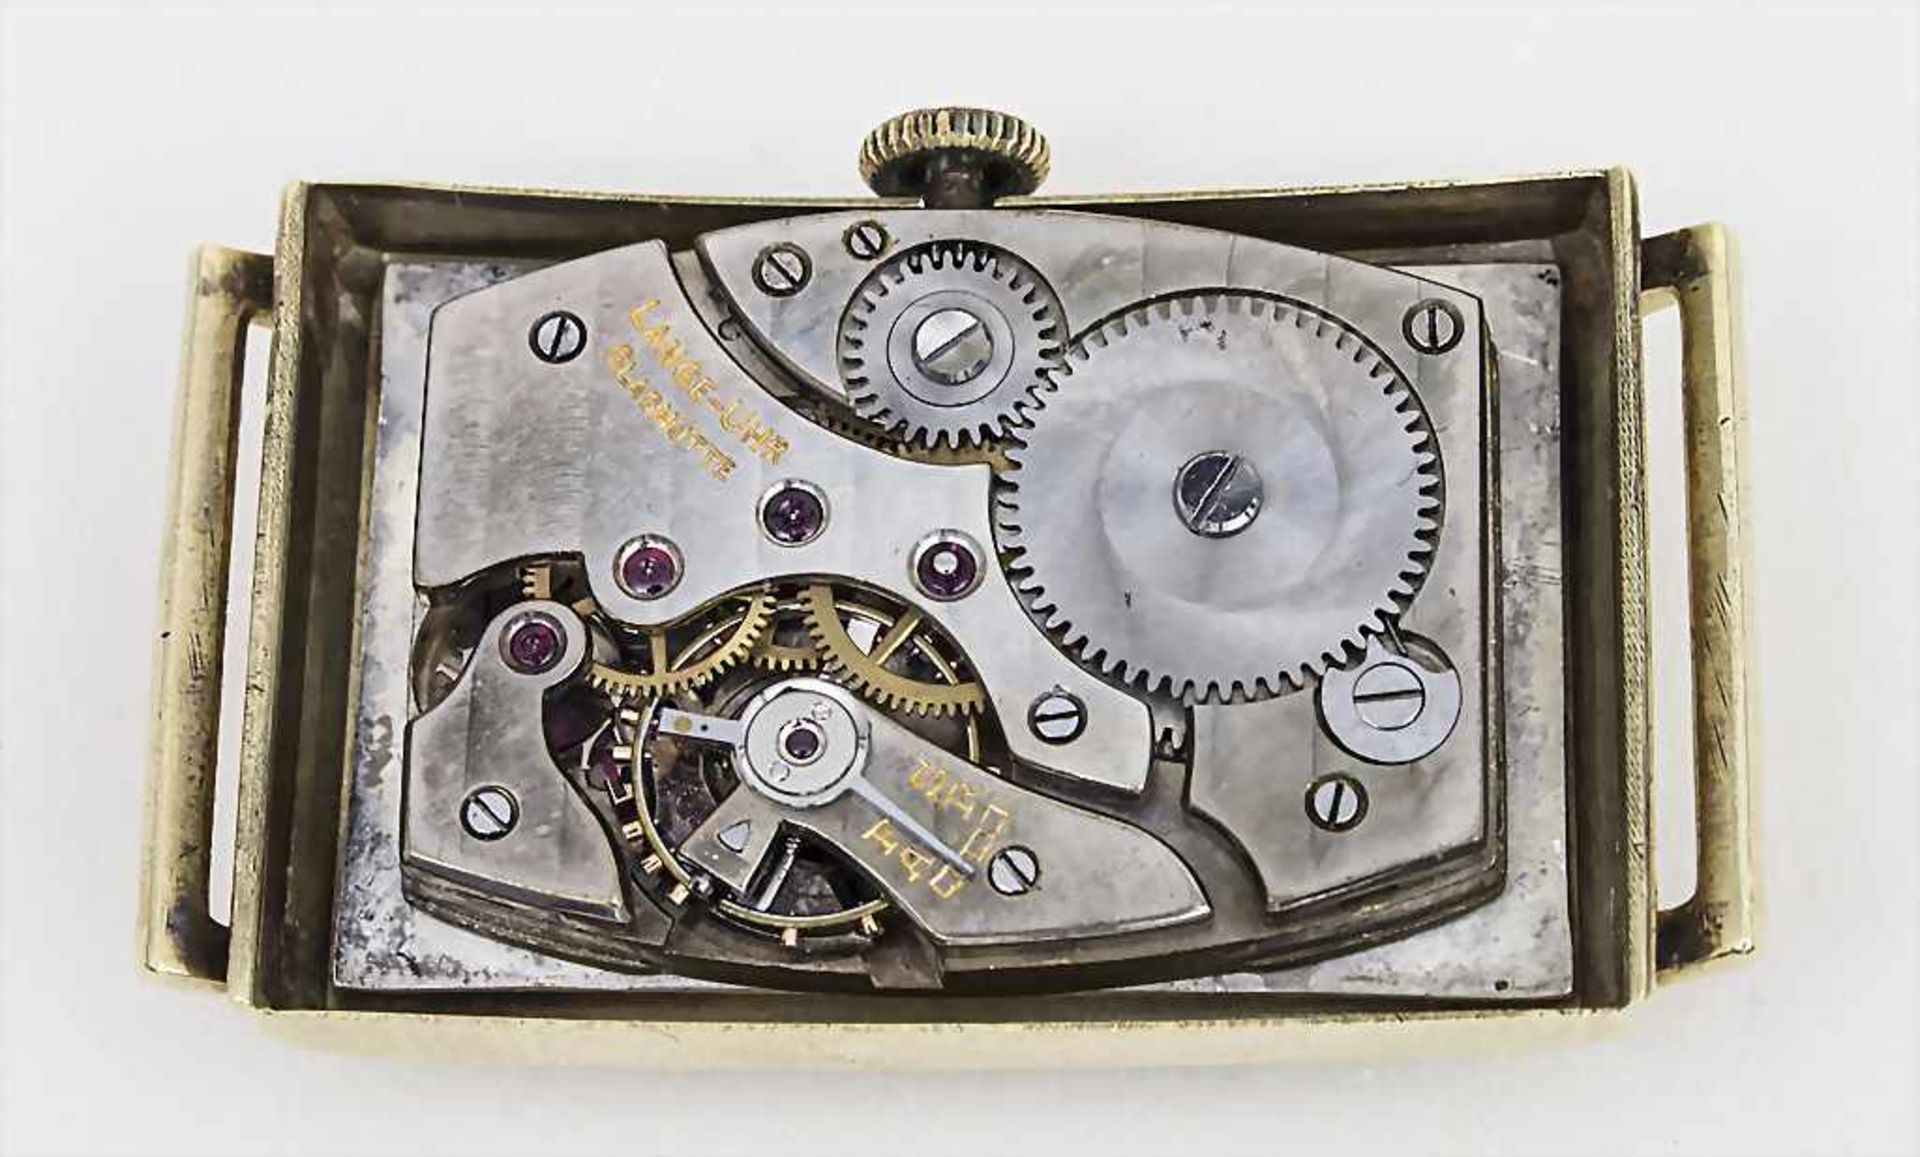 Herrenarmbanduhr / Wristwatch, LANGE-Uhr, Glashütte in Sachsen, ca. 1942 - Image 2 of 3